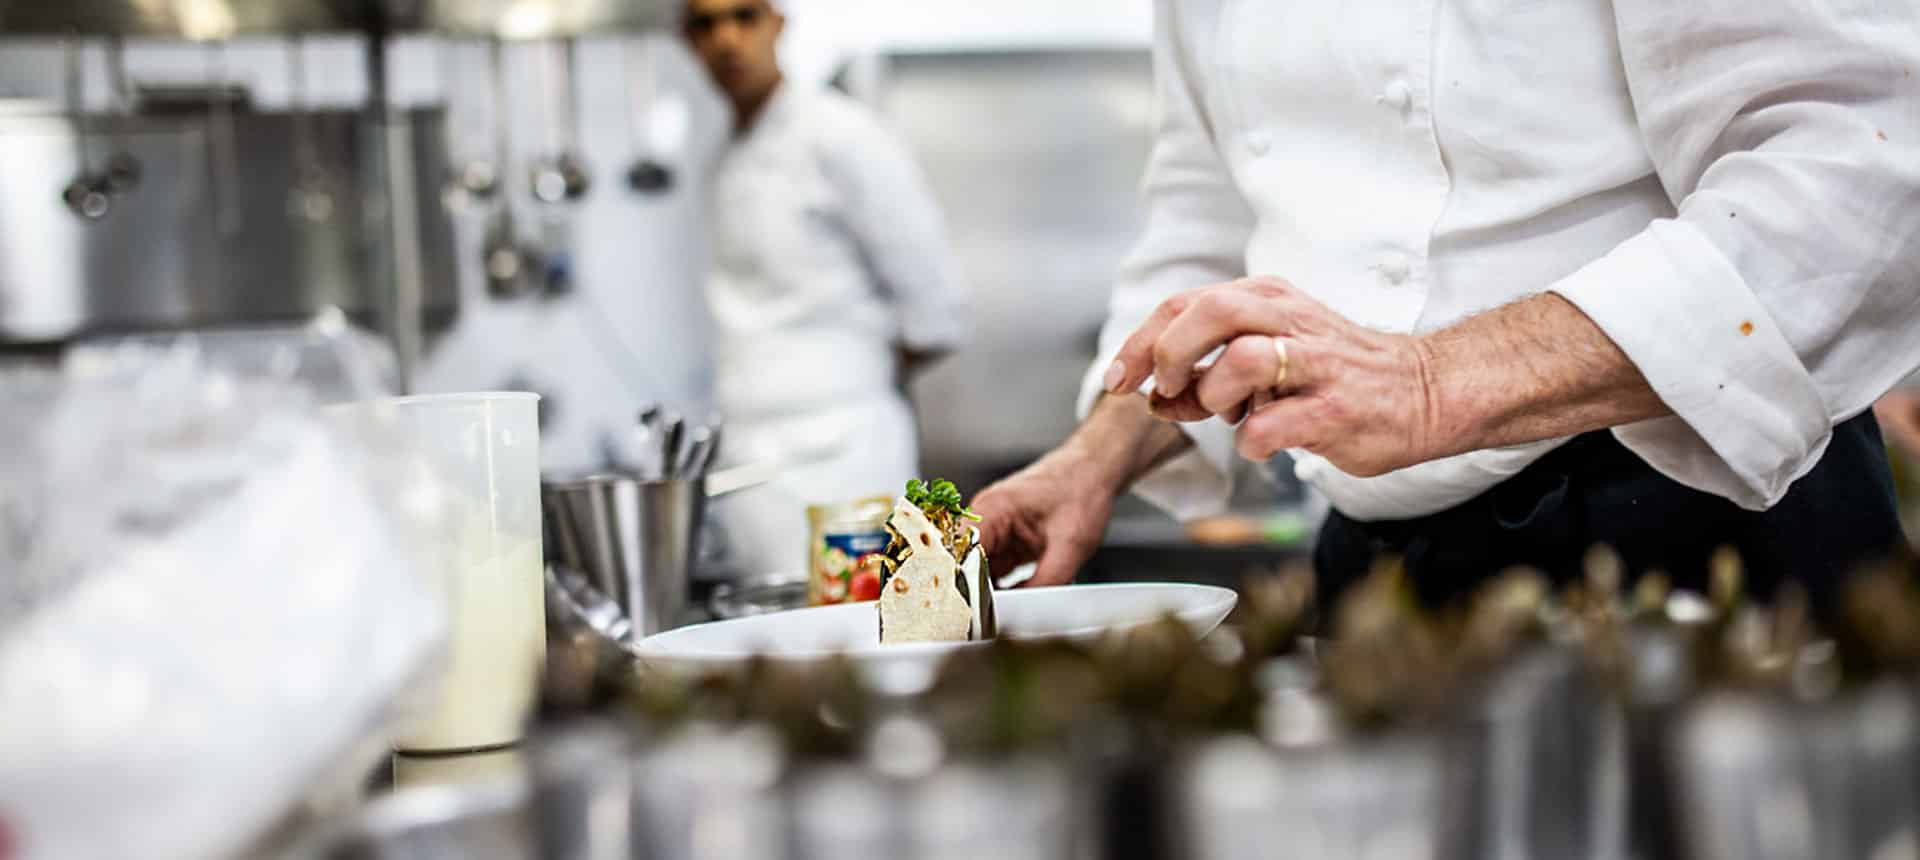 Cucina e territorio: oltre 100 chef alla Pescheria di Catania per tornare ai veri valori del cibo